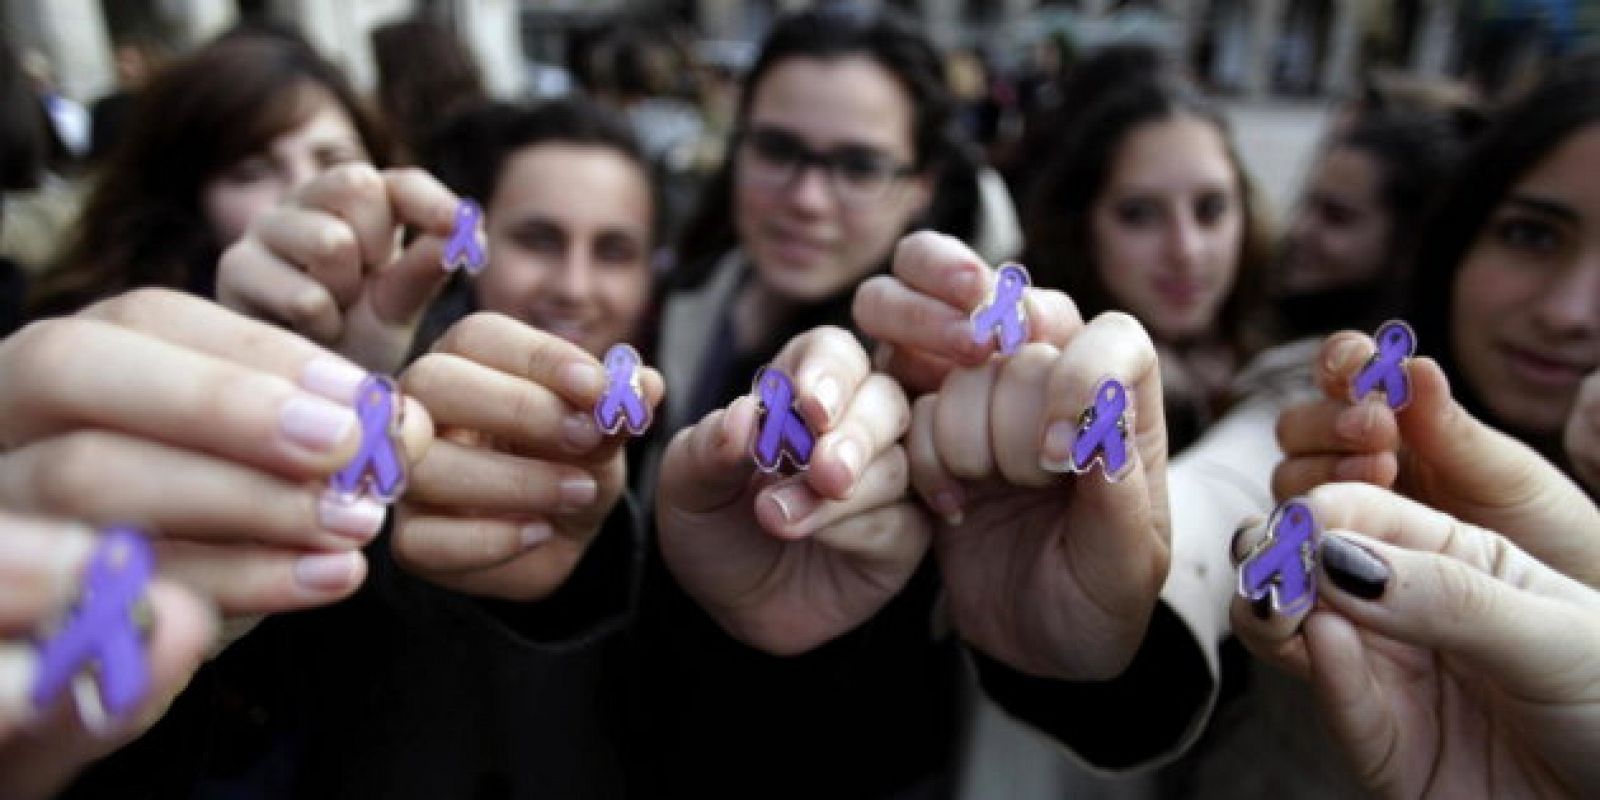 Los 'puntos violetas' han generado más confianza y seguridad a las mujeres en la lucha contra la violencia machista